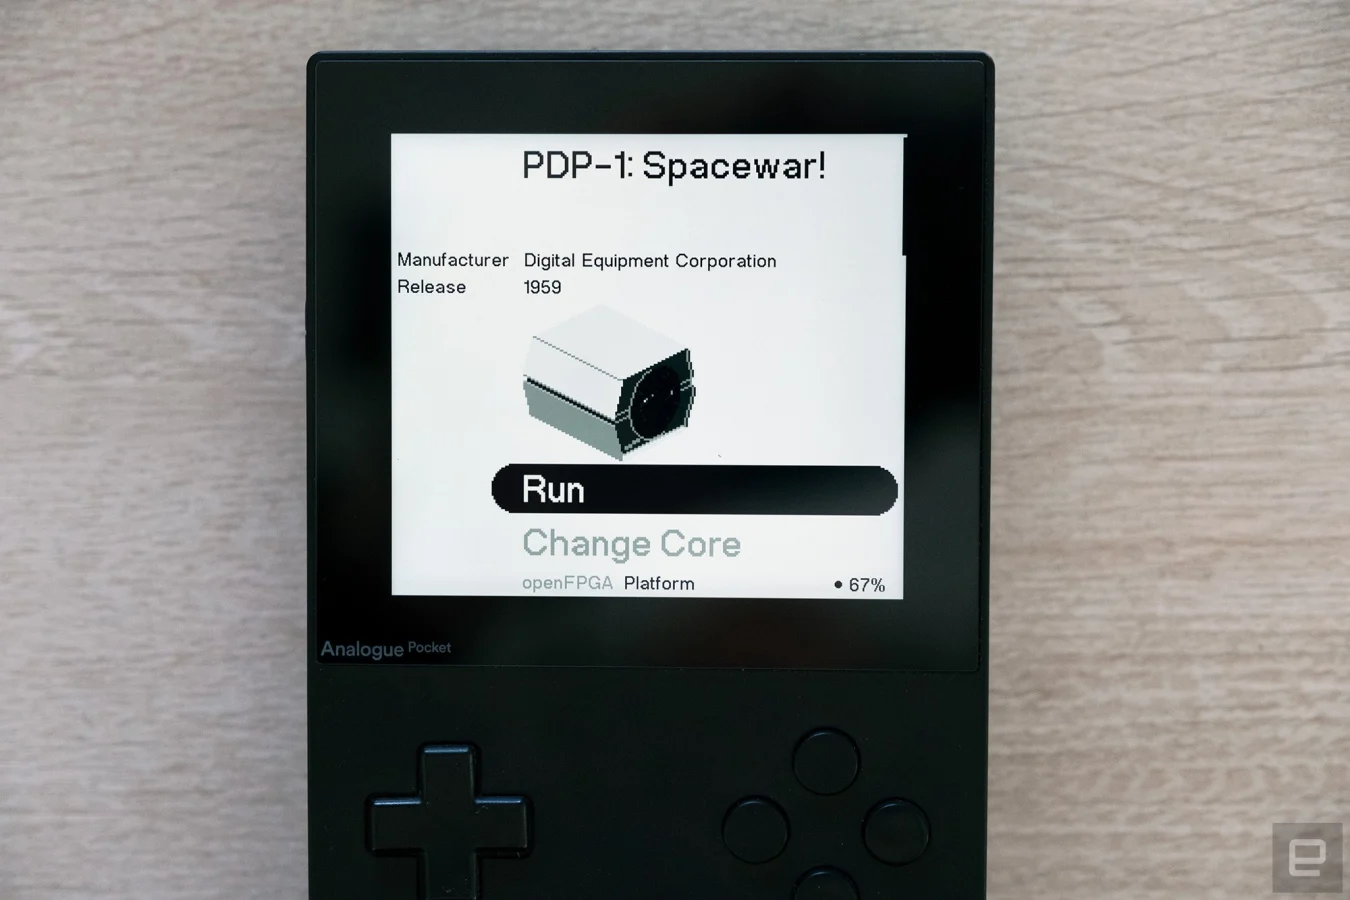 L'ordinateur de poche de jeu Analog Pocket avec le premier noyau développé par un tiers.  Ce noyau permet aux possesseurs de Pocket de jouer à l'un des premiers jeux vidéo - Spacewar !